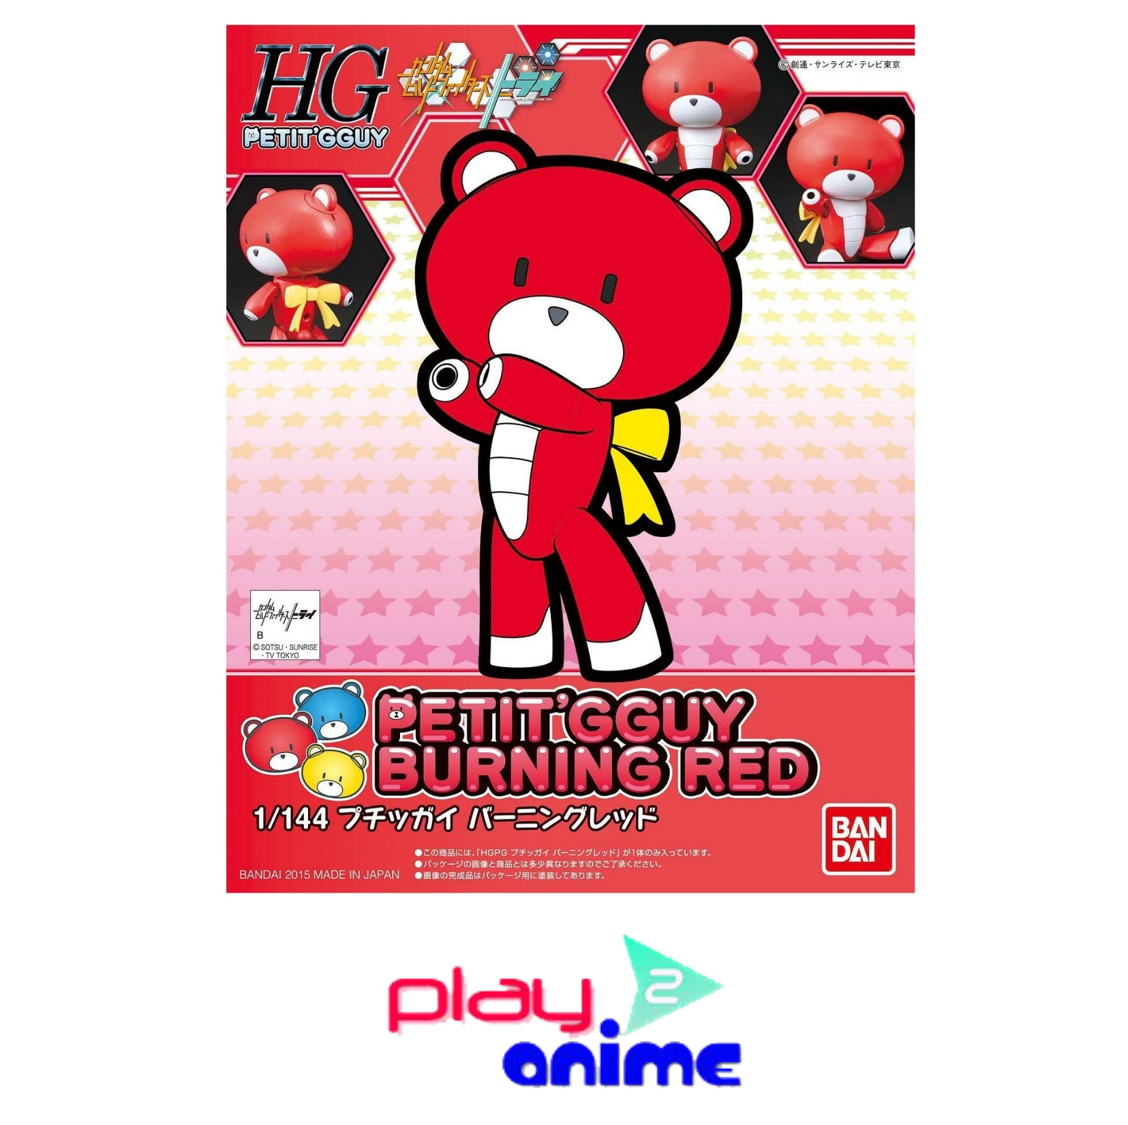 HGPG 001 Petitgguy Burning Red